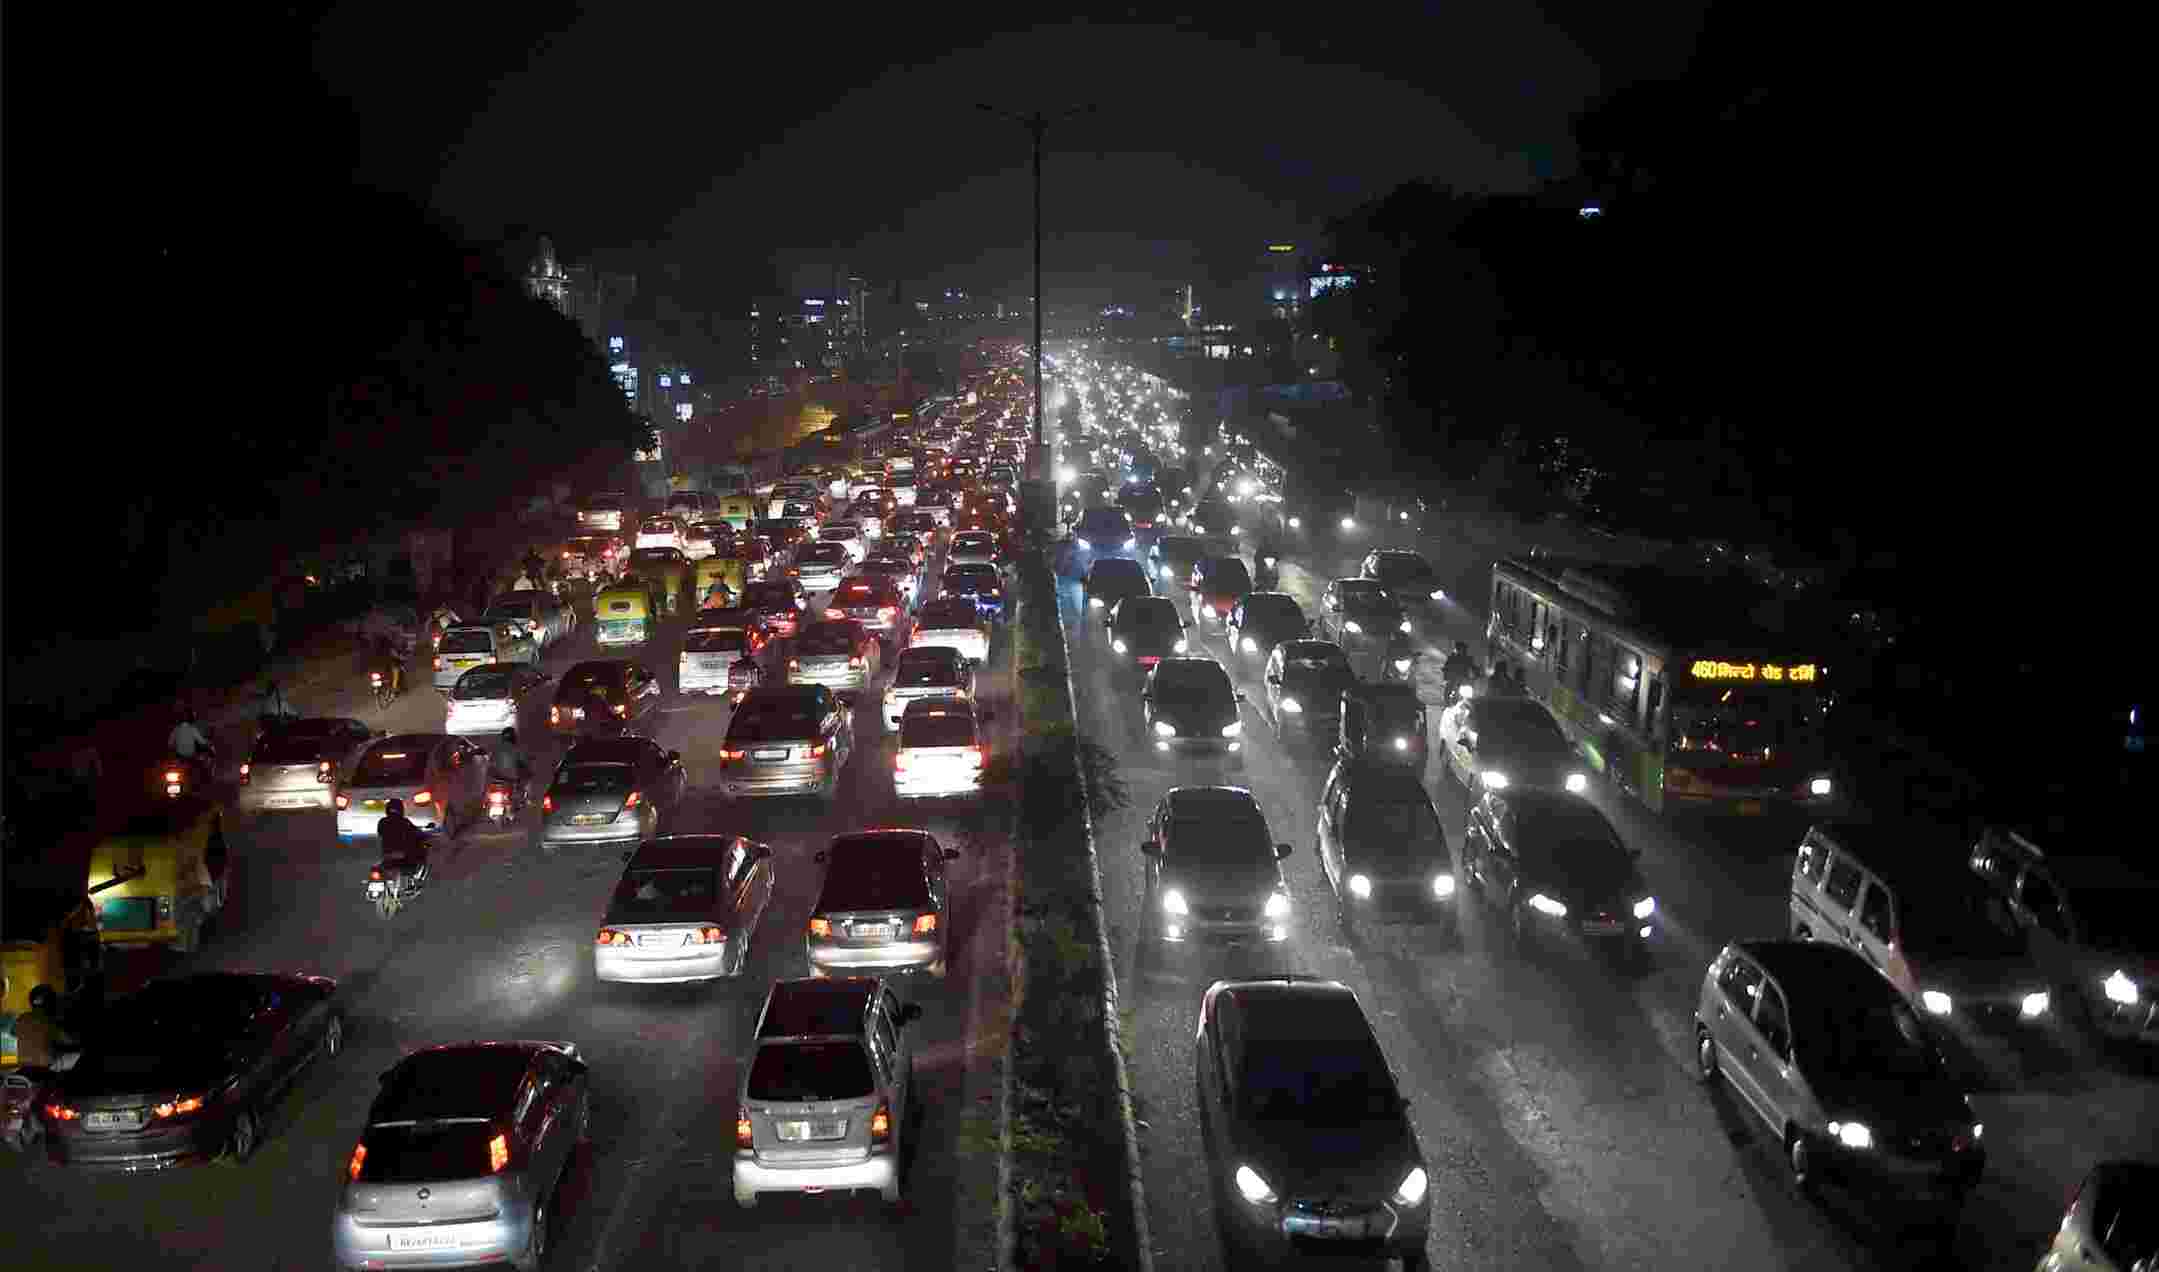 Death In Road Accident :सड़क हादसों में विश्वगुरू बना भारत, तमाम दावों के बीच प्रति घंटा हो रही एक दर्जन से अधिक मौतें